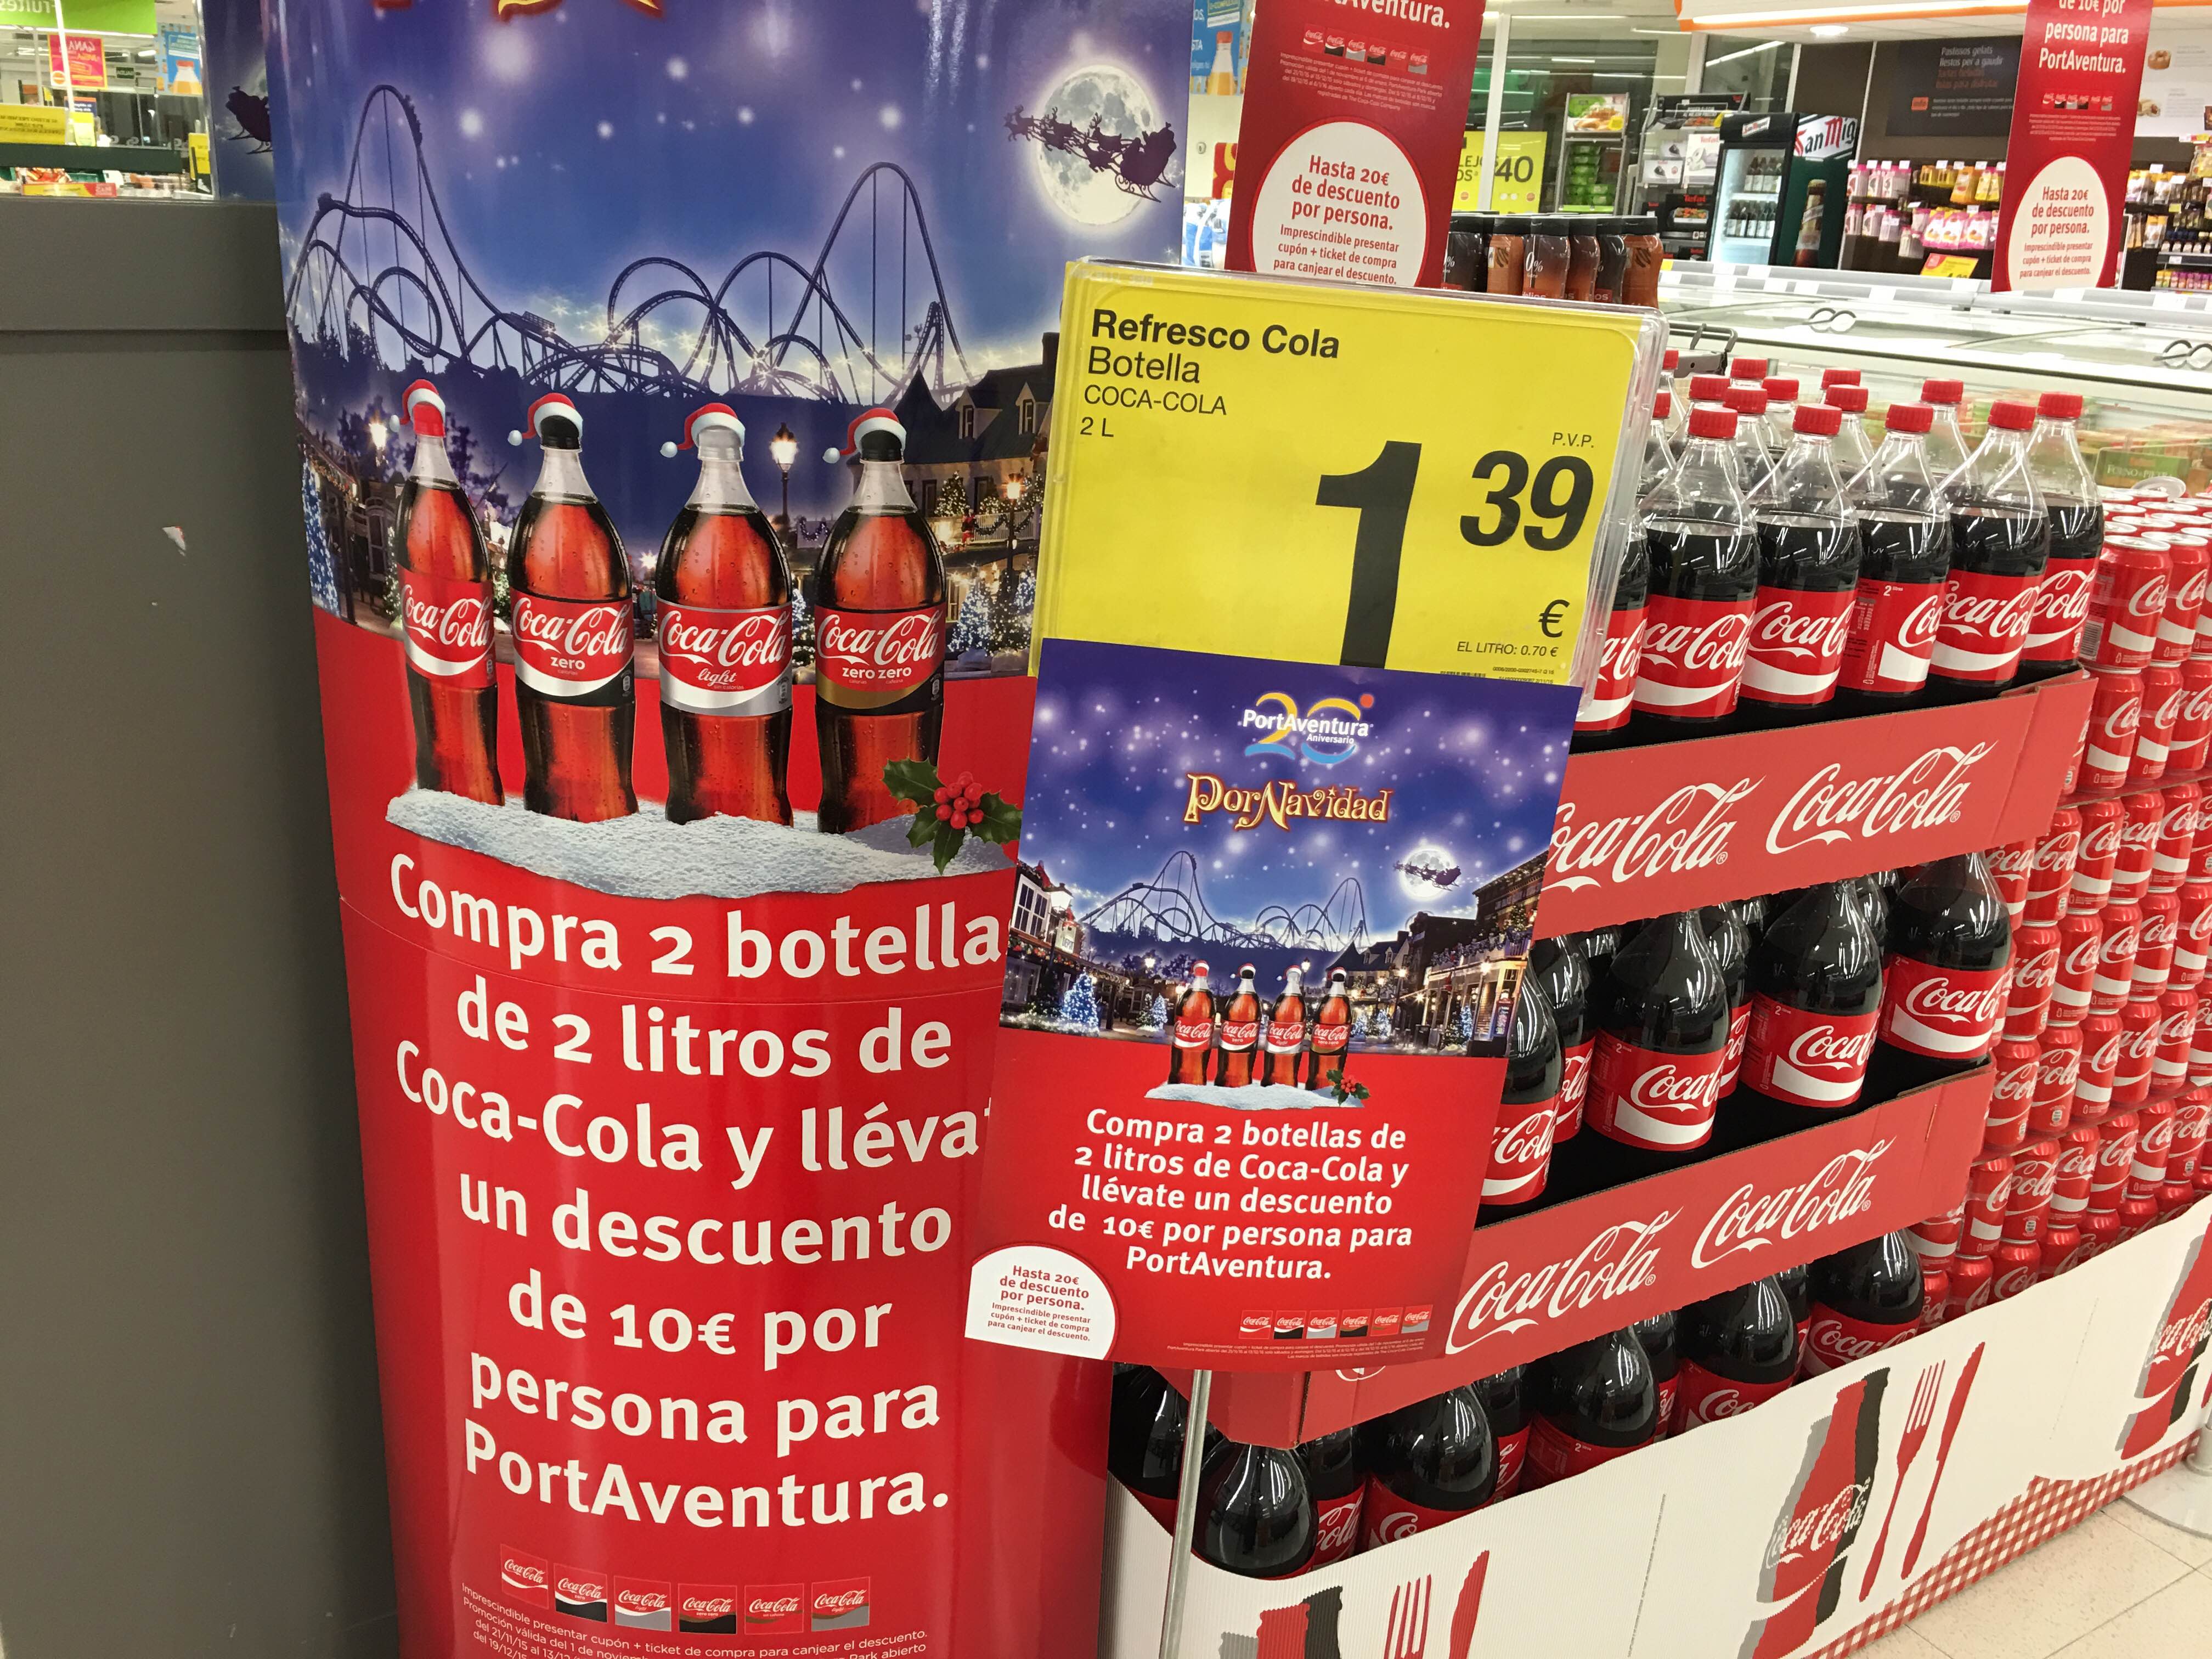 Descuento para Port Aventura con Coca Cola